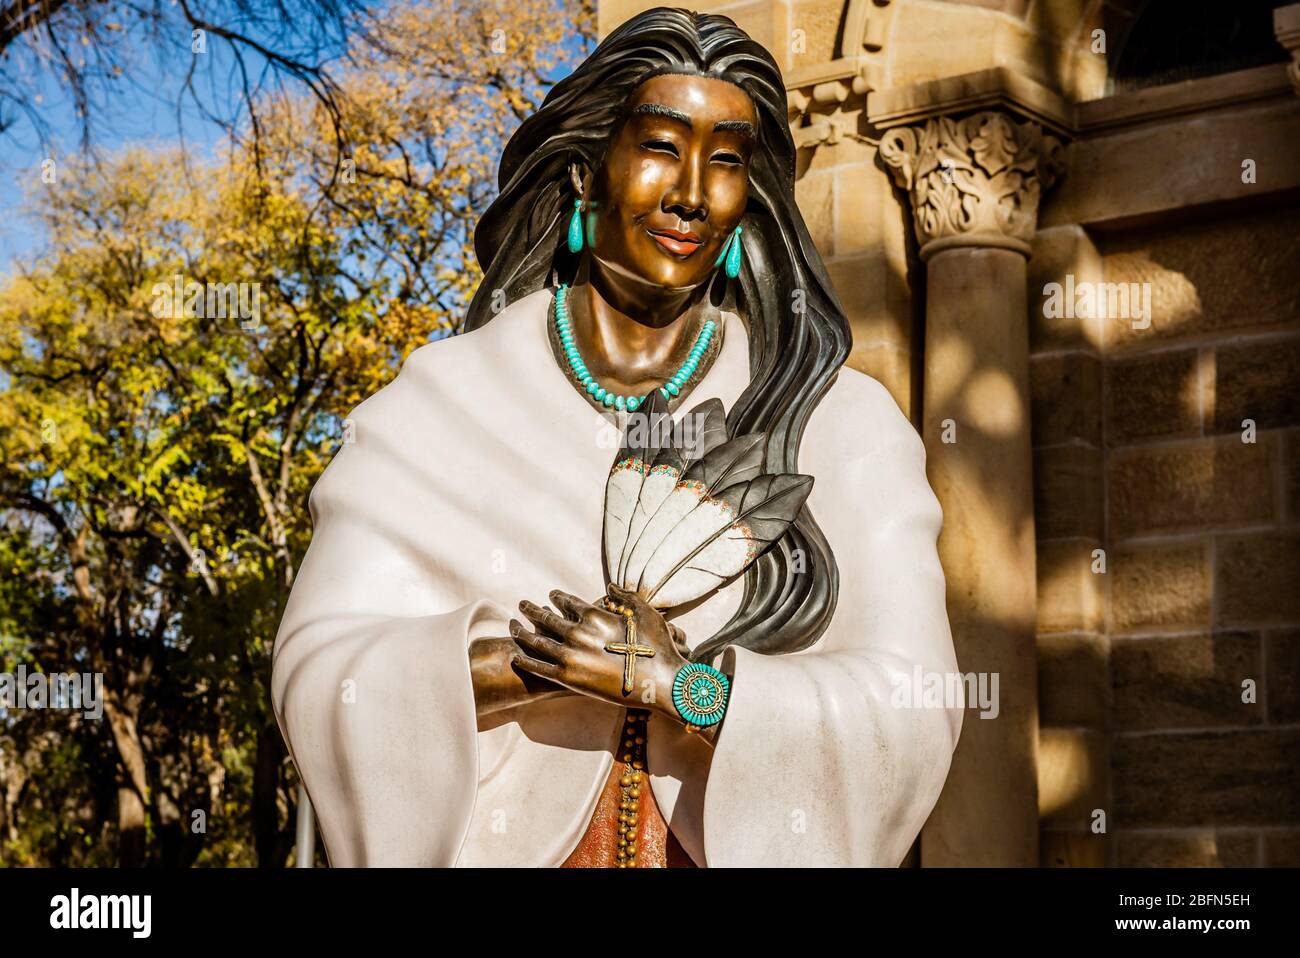 Die Bronzestatue der heiligen Kateri Tekakwitha, die von der Künstlerin Estella Loretto, der ersten indianischen Frau, die heilig gesprochen wurde, geschaffen wurde, in Santa Fe, NM. USA. Stockfoto